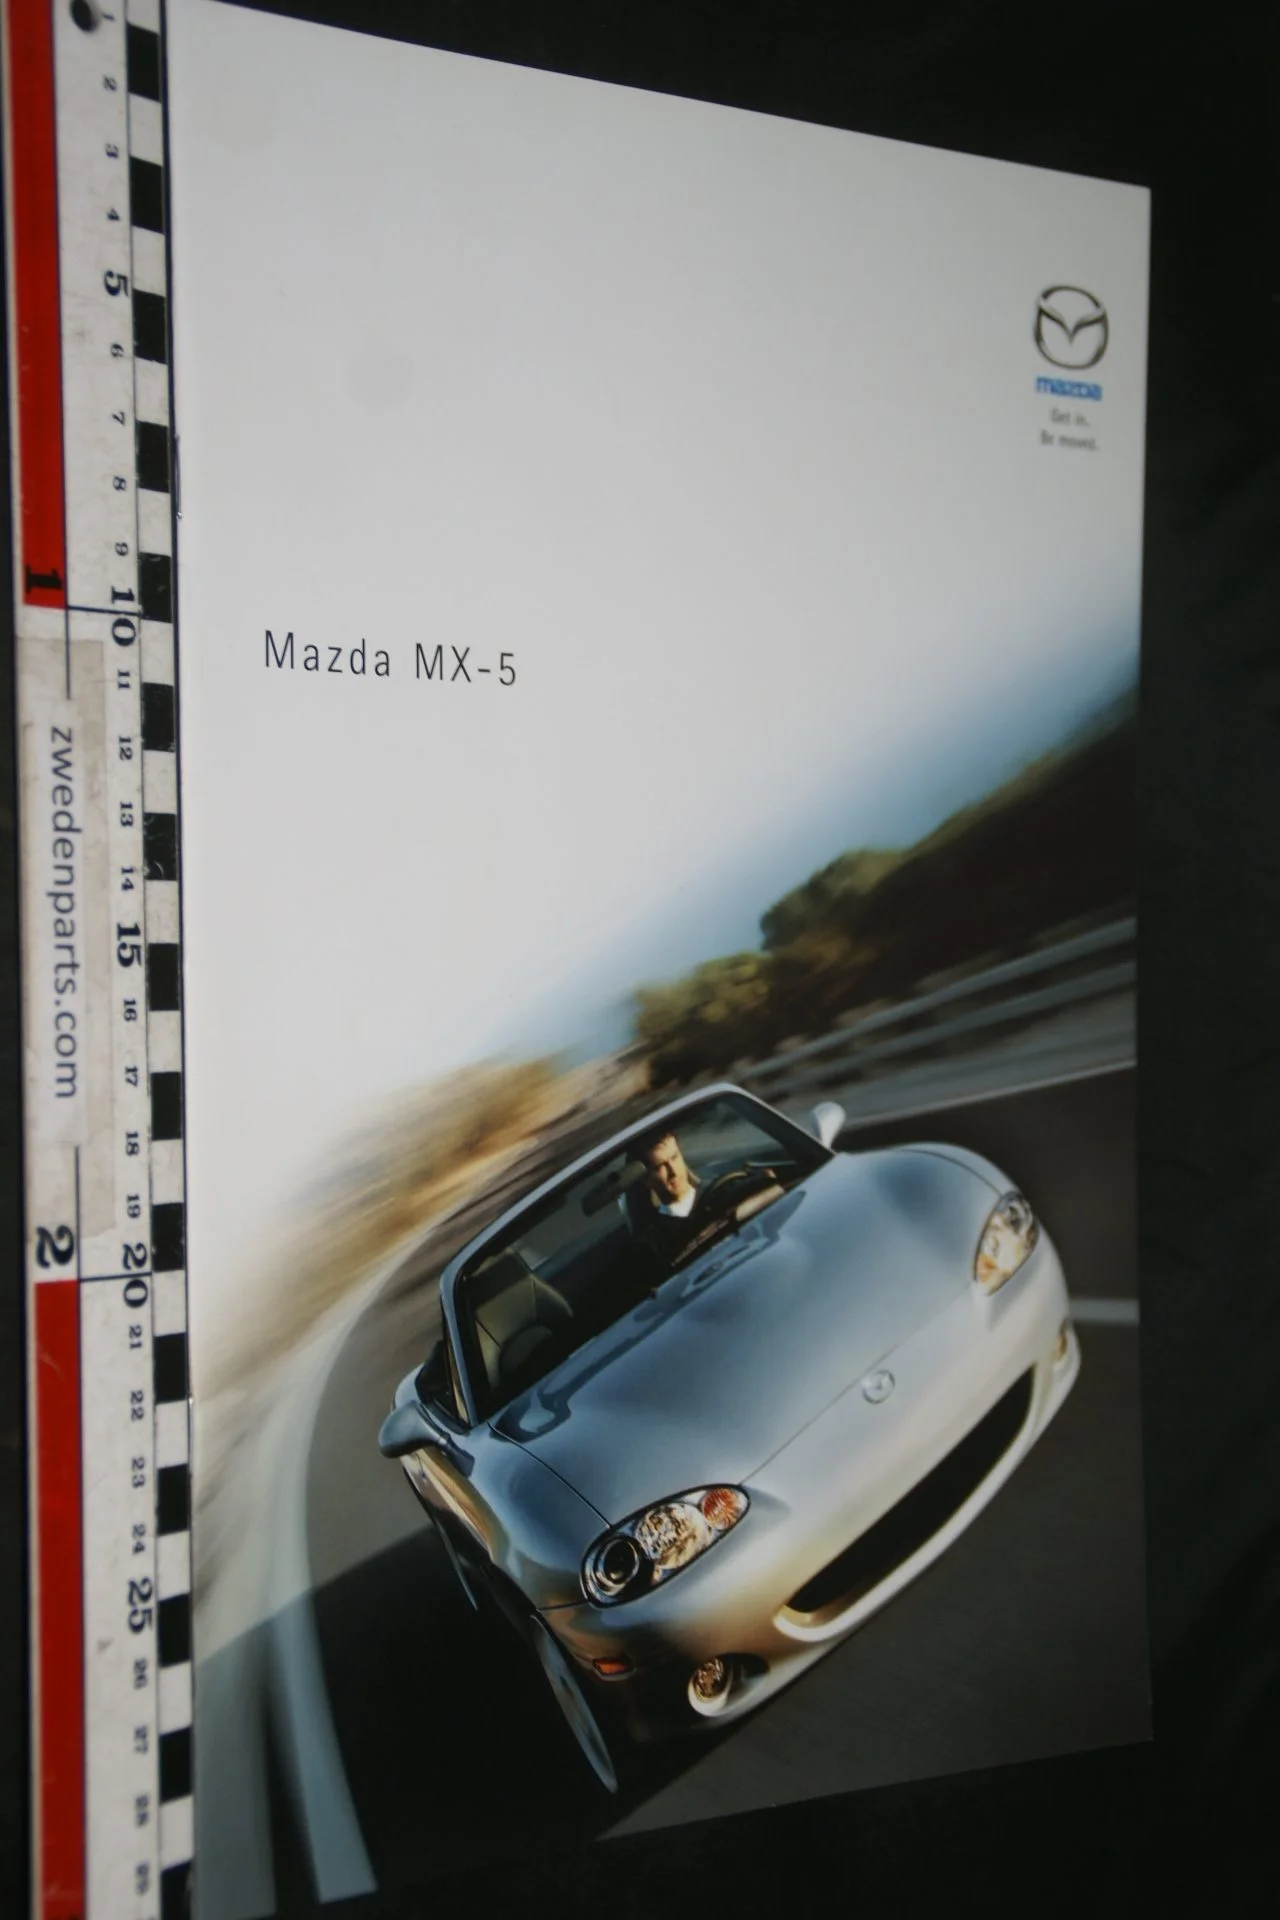 DSC04890 Mazda MX-5 brochure